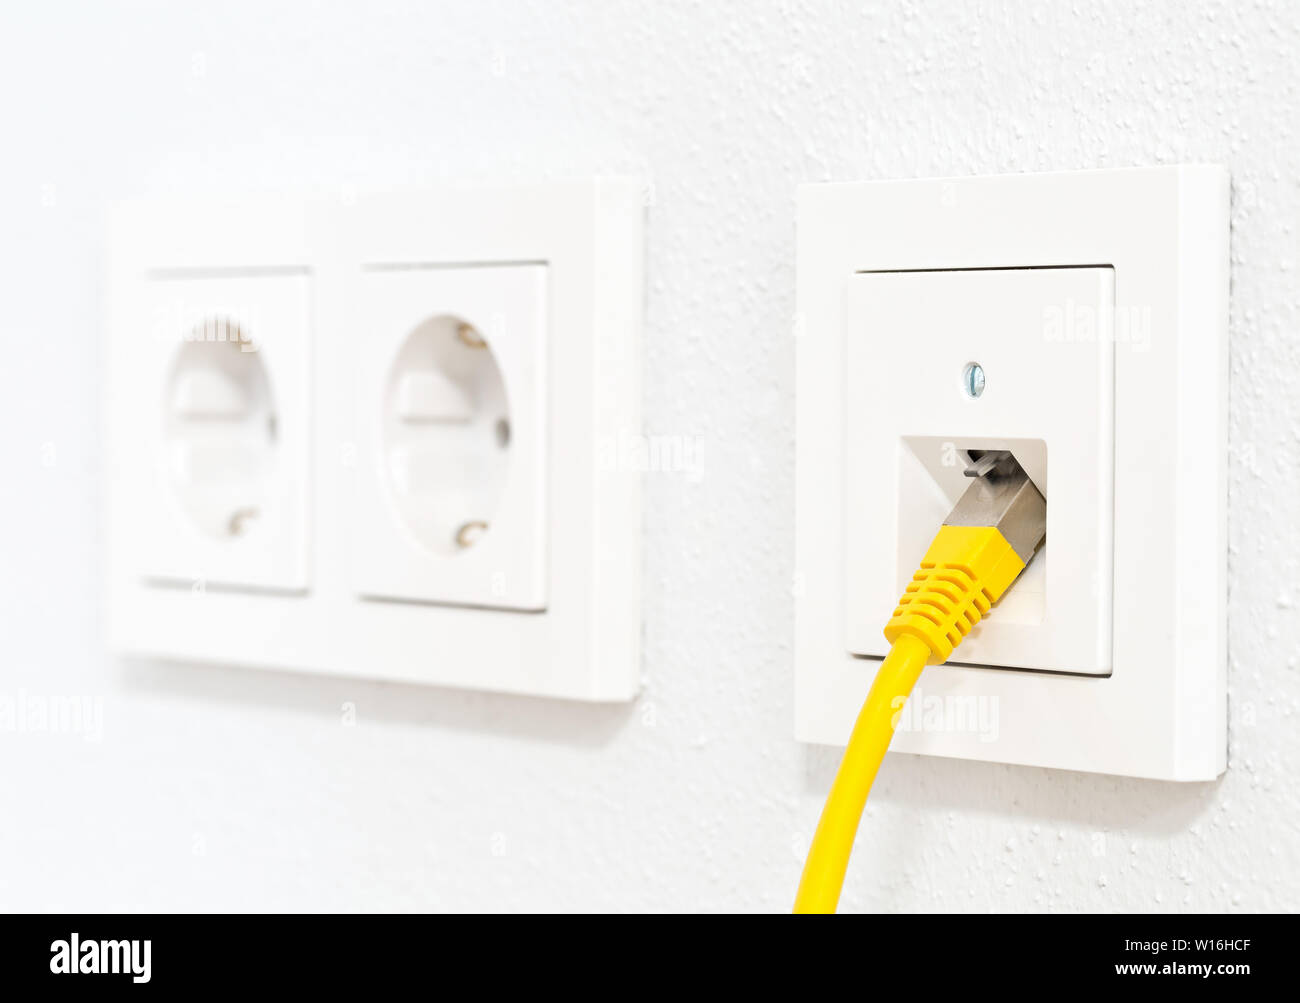 Gelbe Kabel in Steckdose für Büro oder private LAN-Ethernet-Anschluss mit  Steckdosen flache Ansicht auf weiß verputzten Wand Hintergrund  Stockfotografie - Alamy